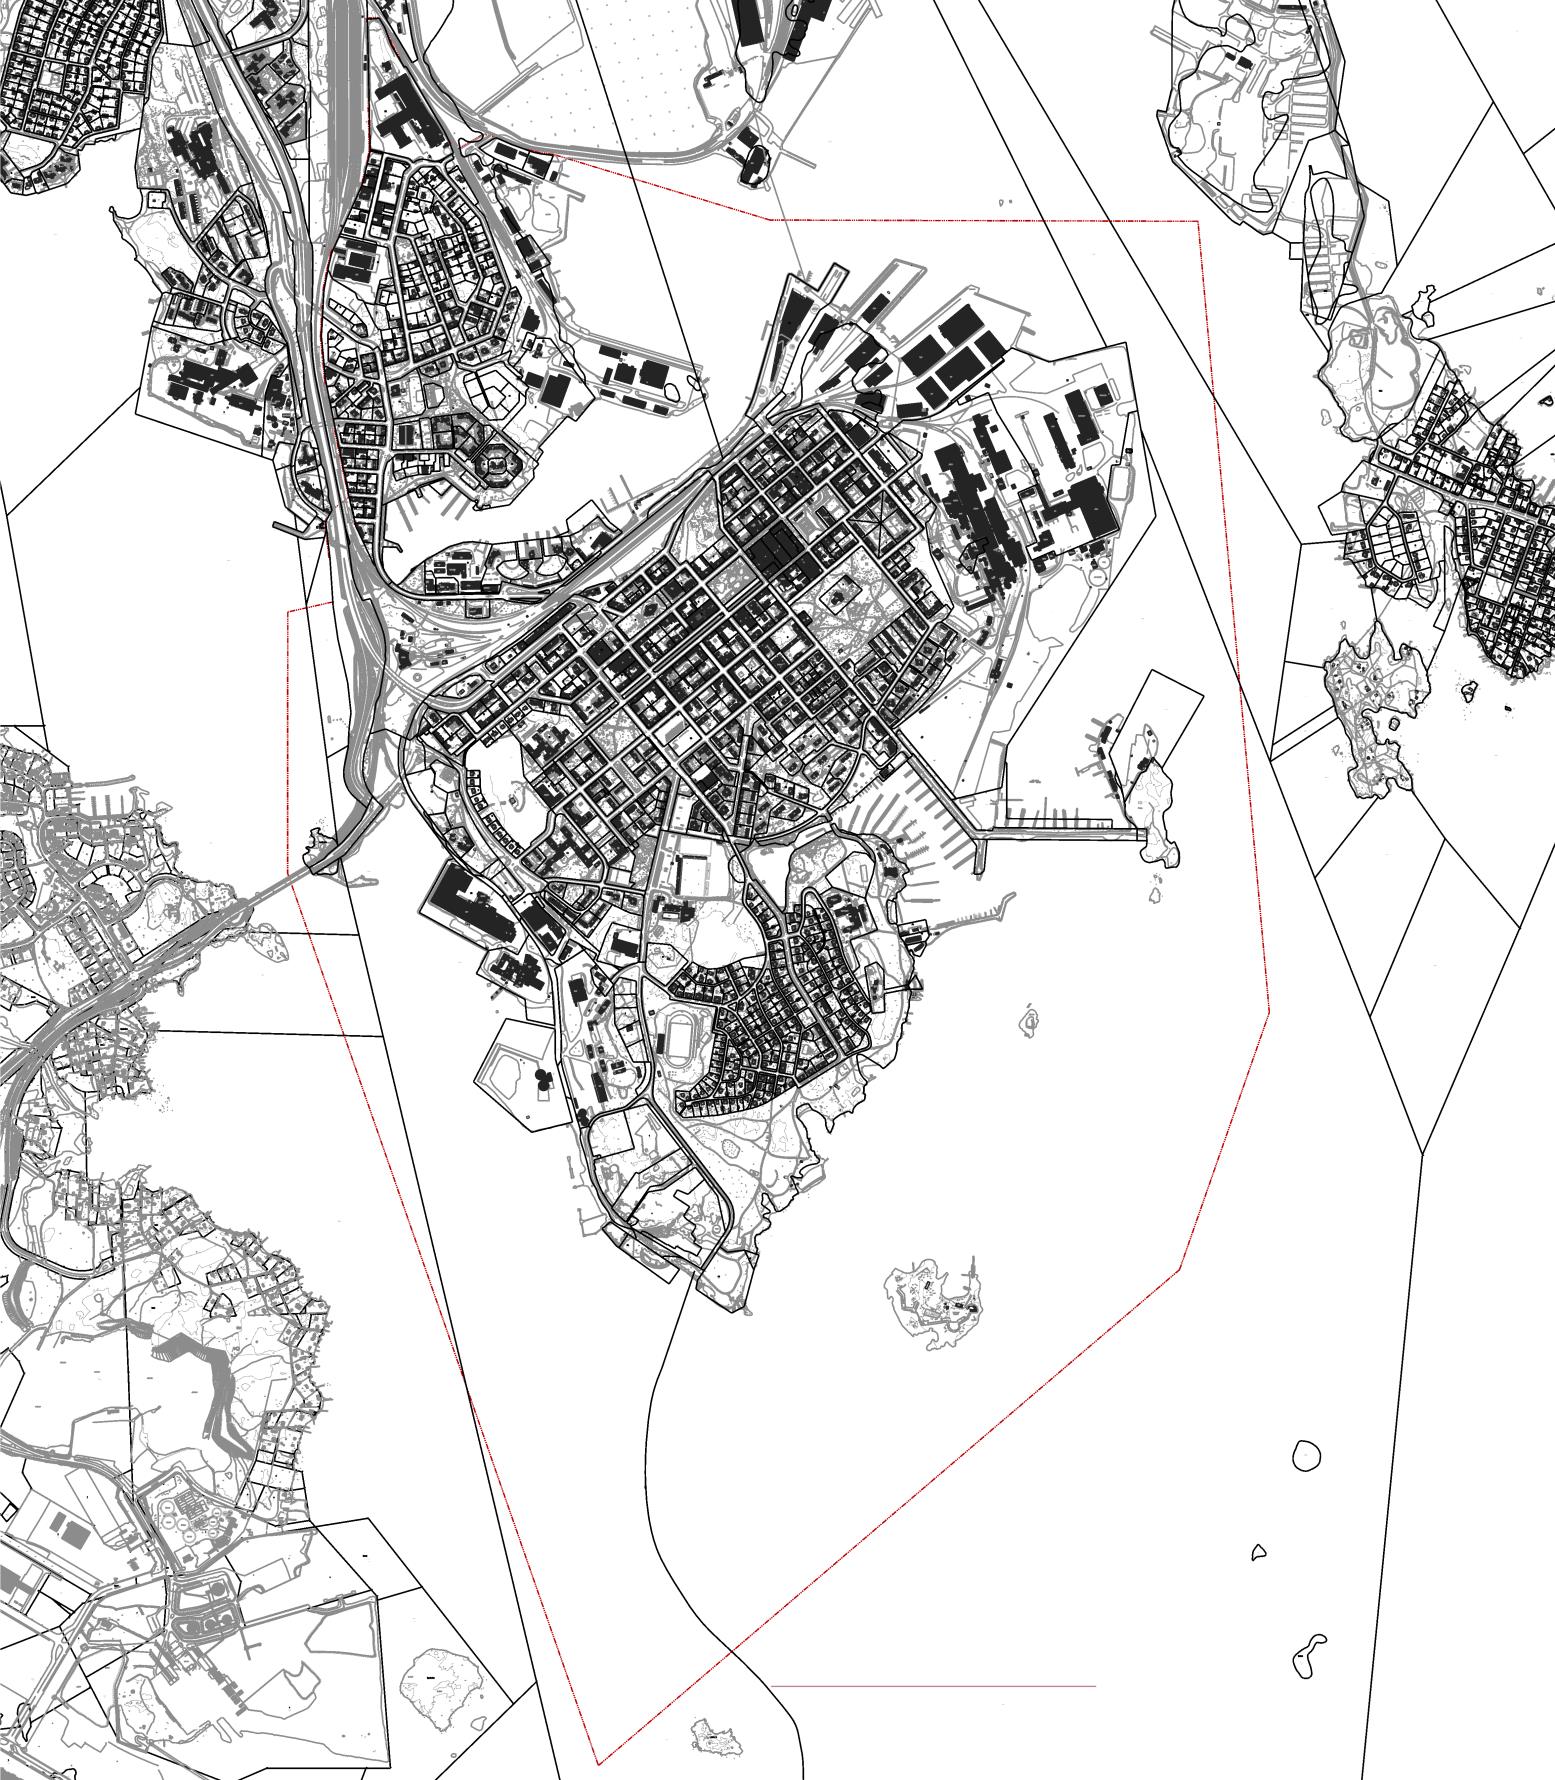 2. Suunnittelualue Suunnittelualue käsittää kokonaisuudessaan kaupungin keskusta-alueen sisältäen kaupunginosista Kotkansaaren sekä sen pohjoispuolella sijaitsevan Hovinsaaren eteläosat.